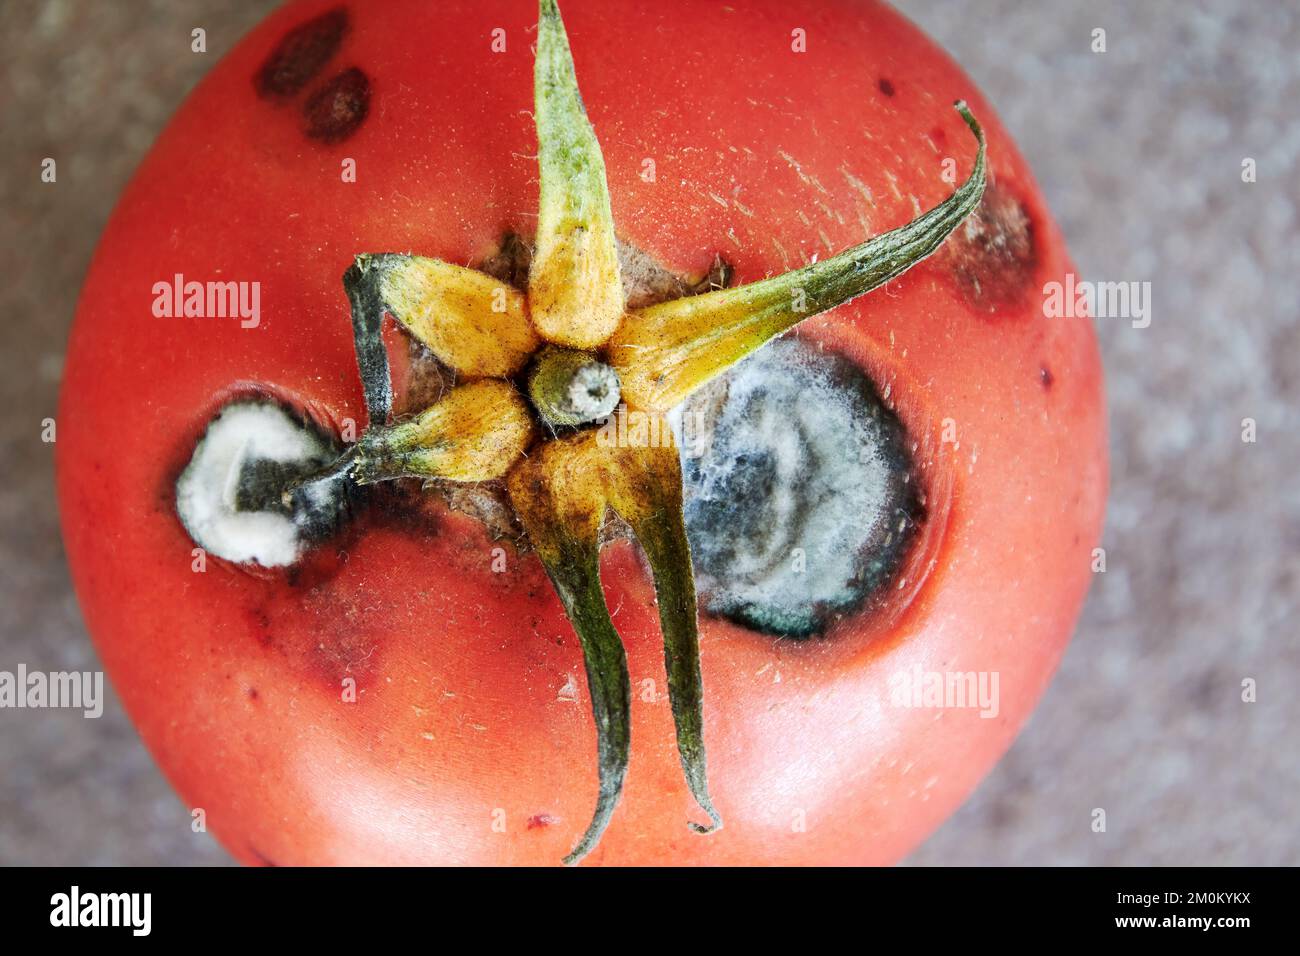 Vista dall'alto del pomodoro rosso marcio con muffa bianca brillante. Cibi e verdure malsani e rovinati Foto Stock